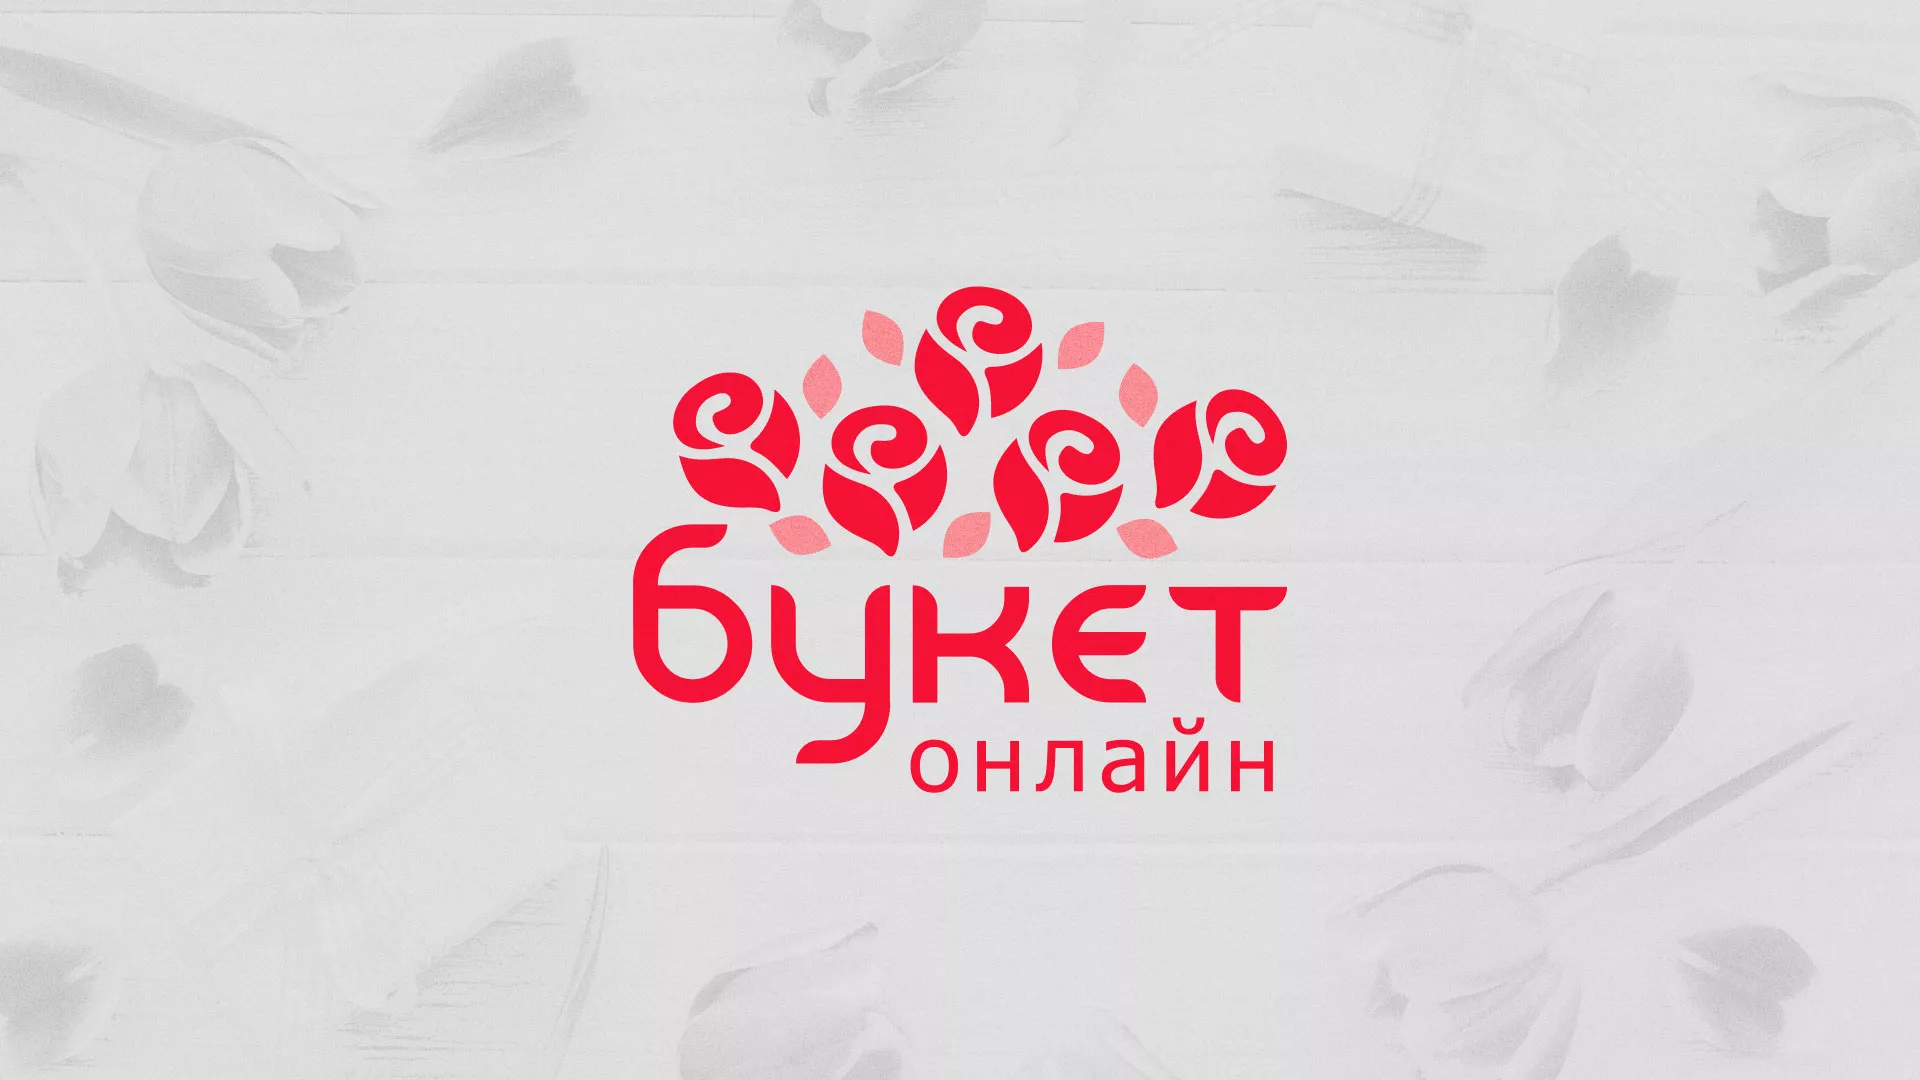 Создание интернет-магазина «Букет-онлайн» по цветам в Мариинском Посаде